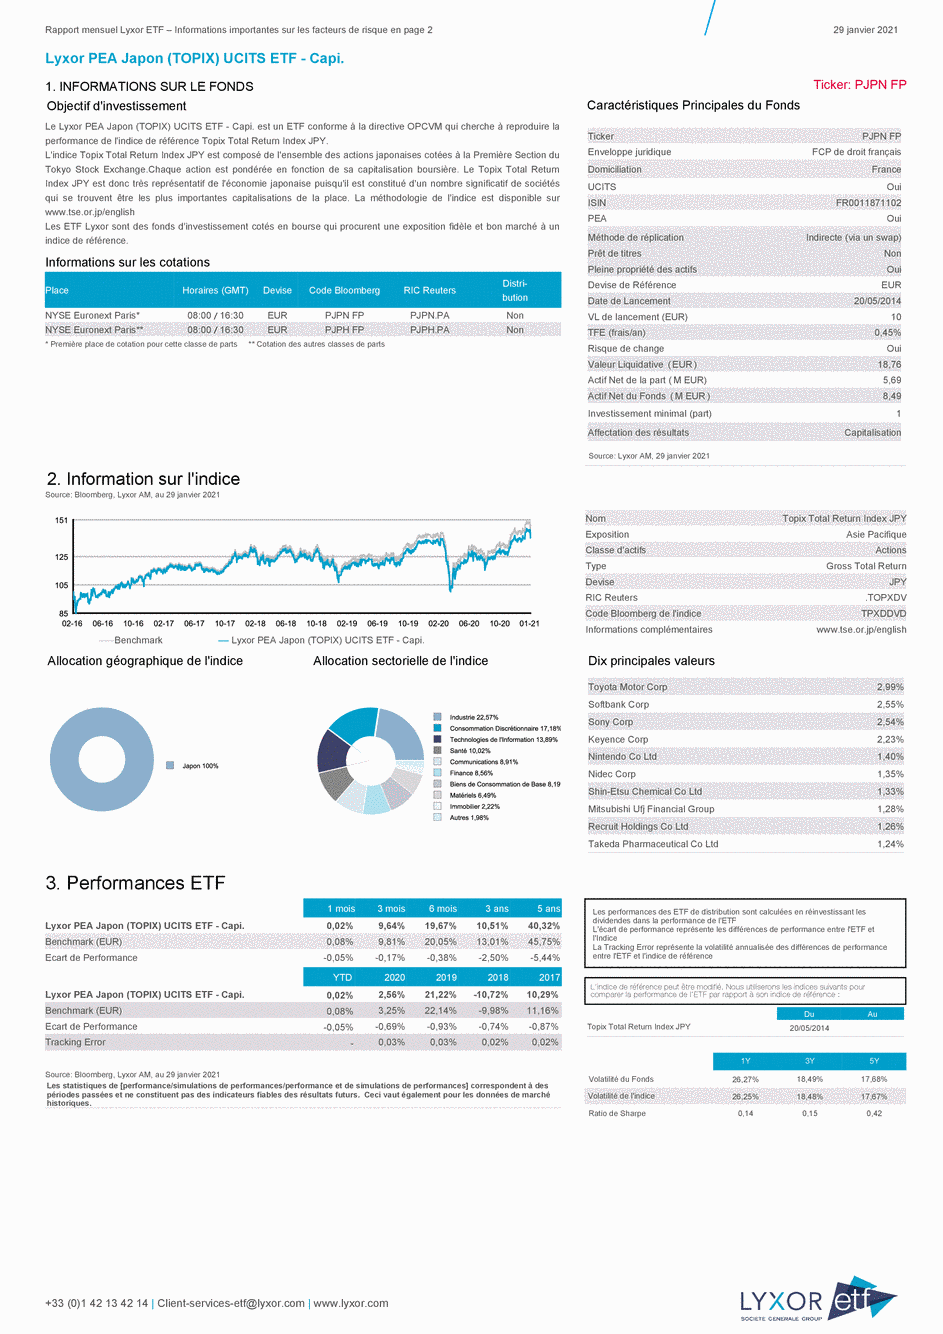 Reporting Lyxor PEA Japon (TOPIX) UCITS ETF - Capi. - 29/01/2021 - Français